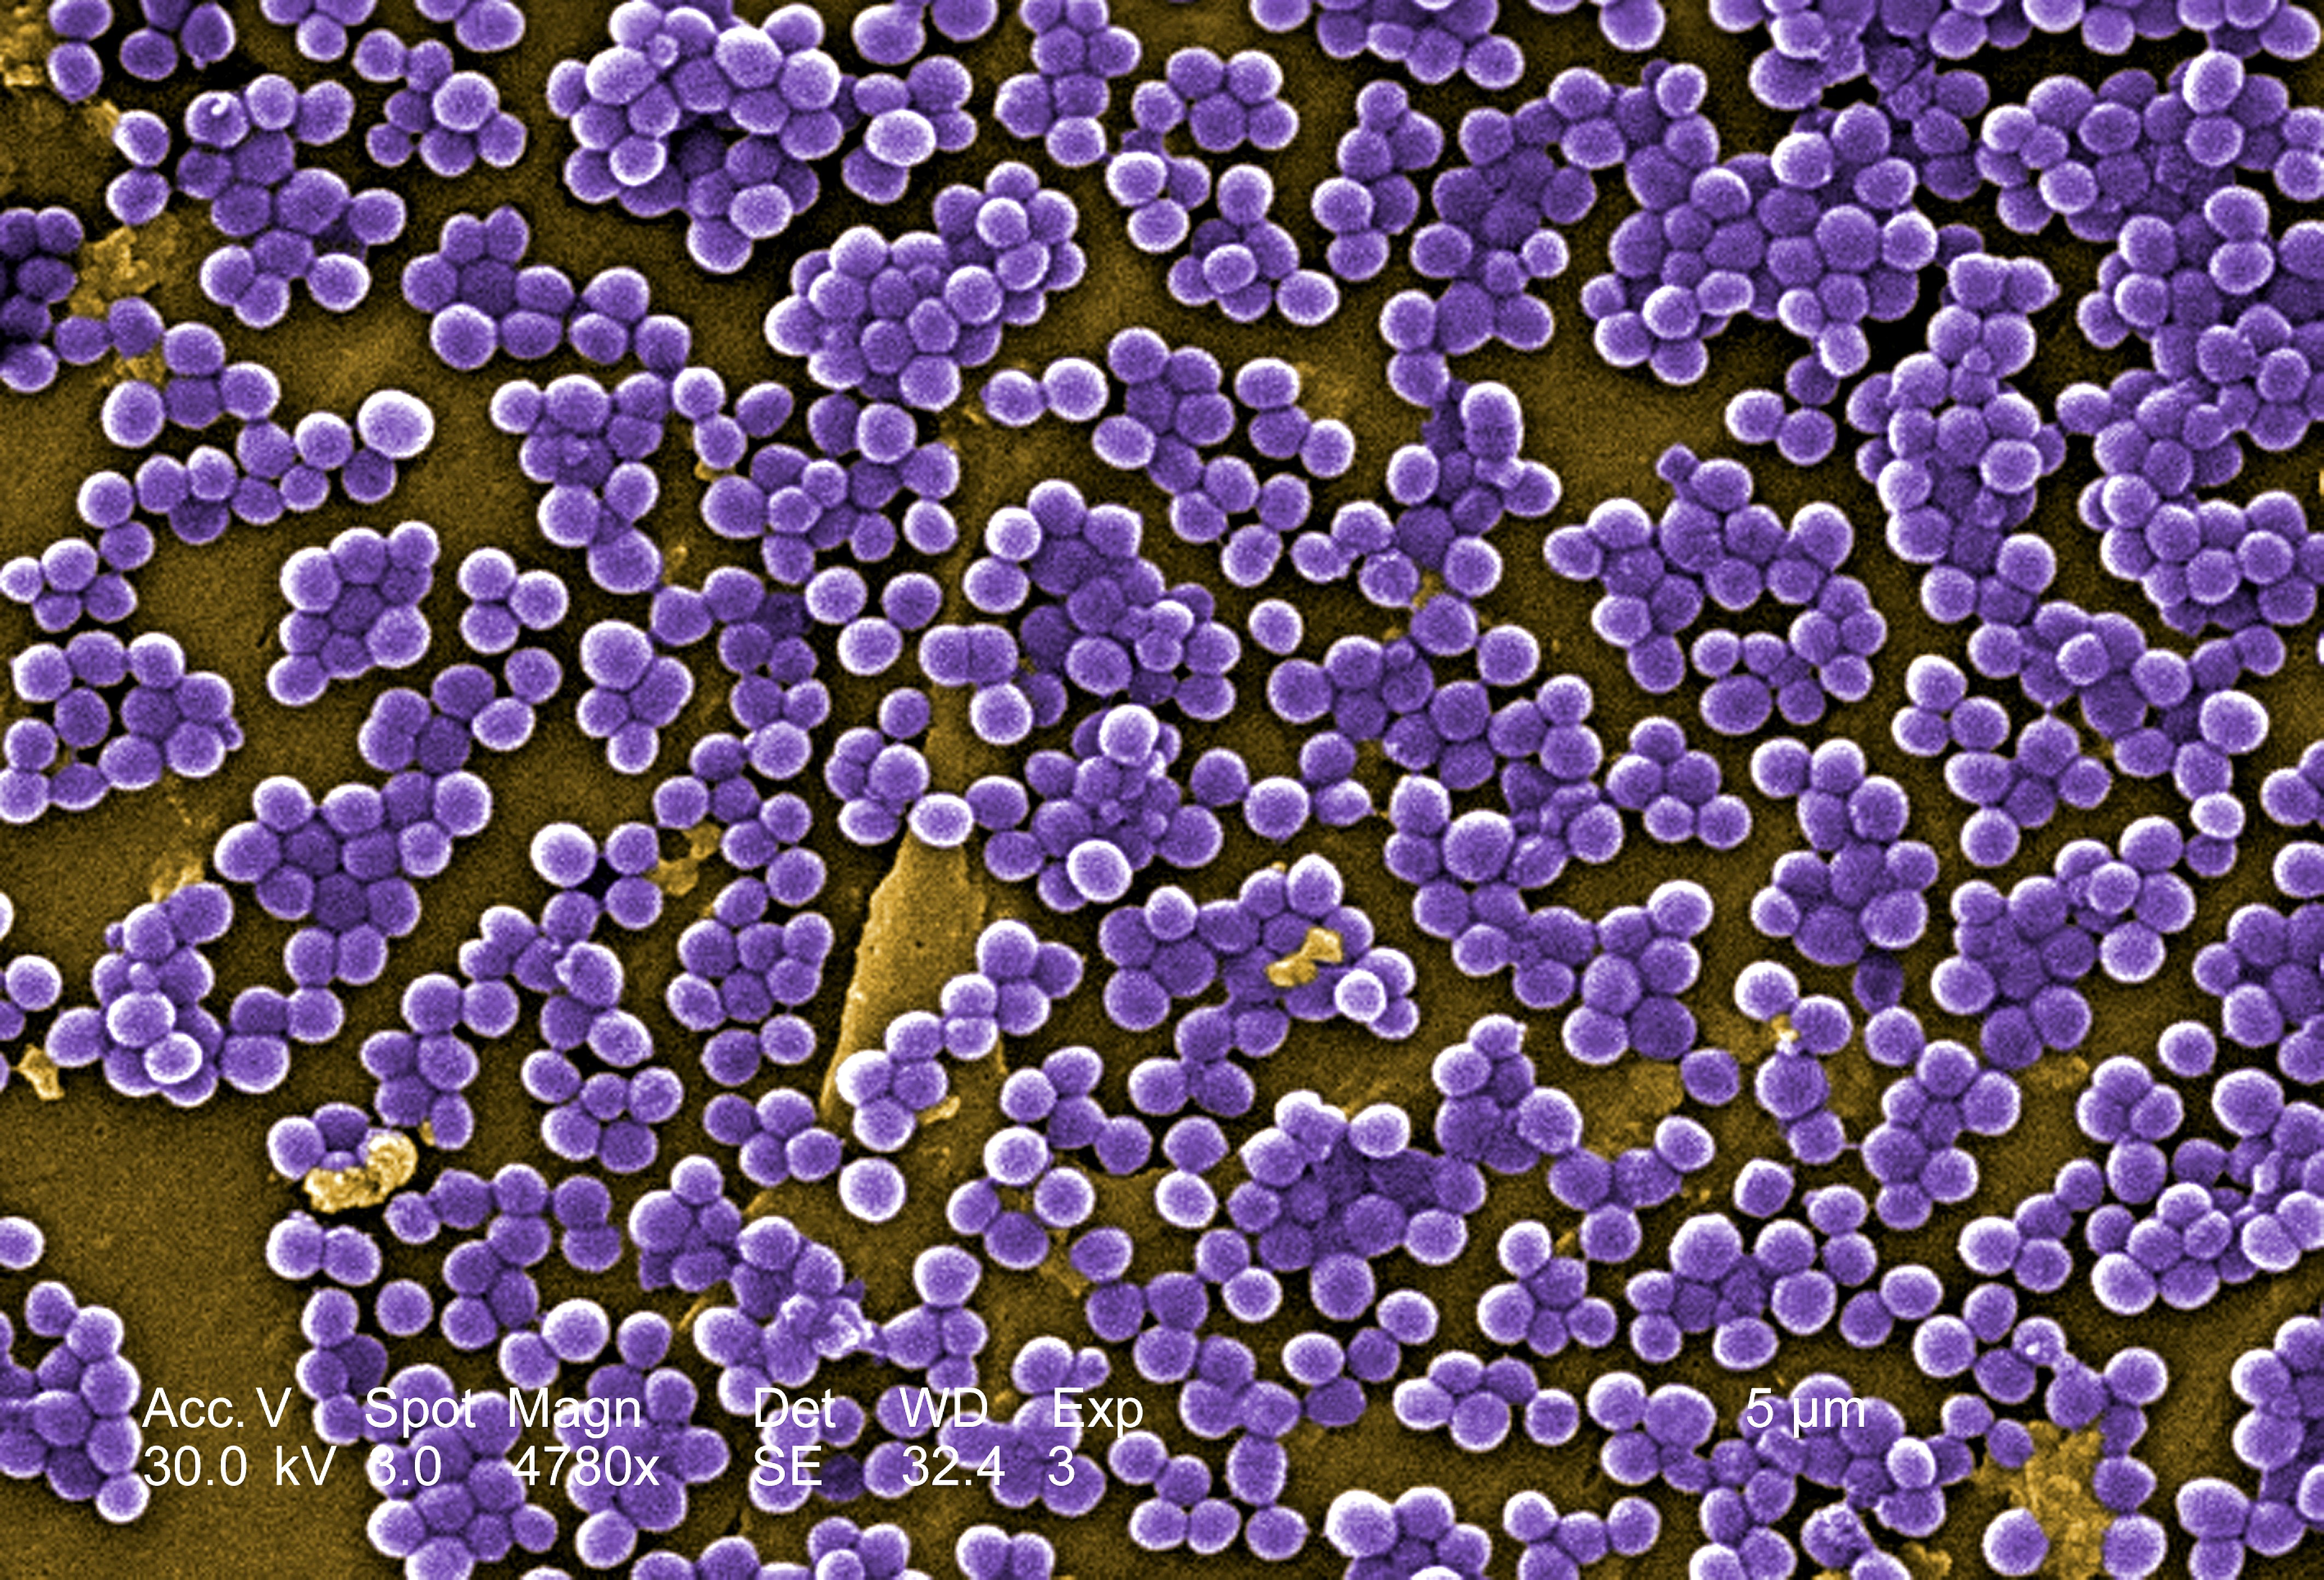 Staphylococcus Aureus Electron Microscope